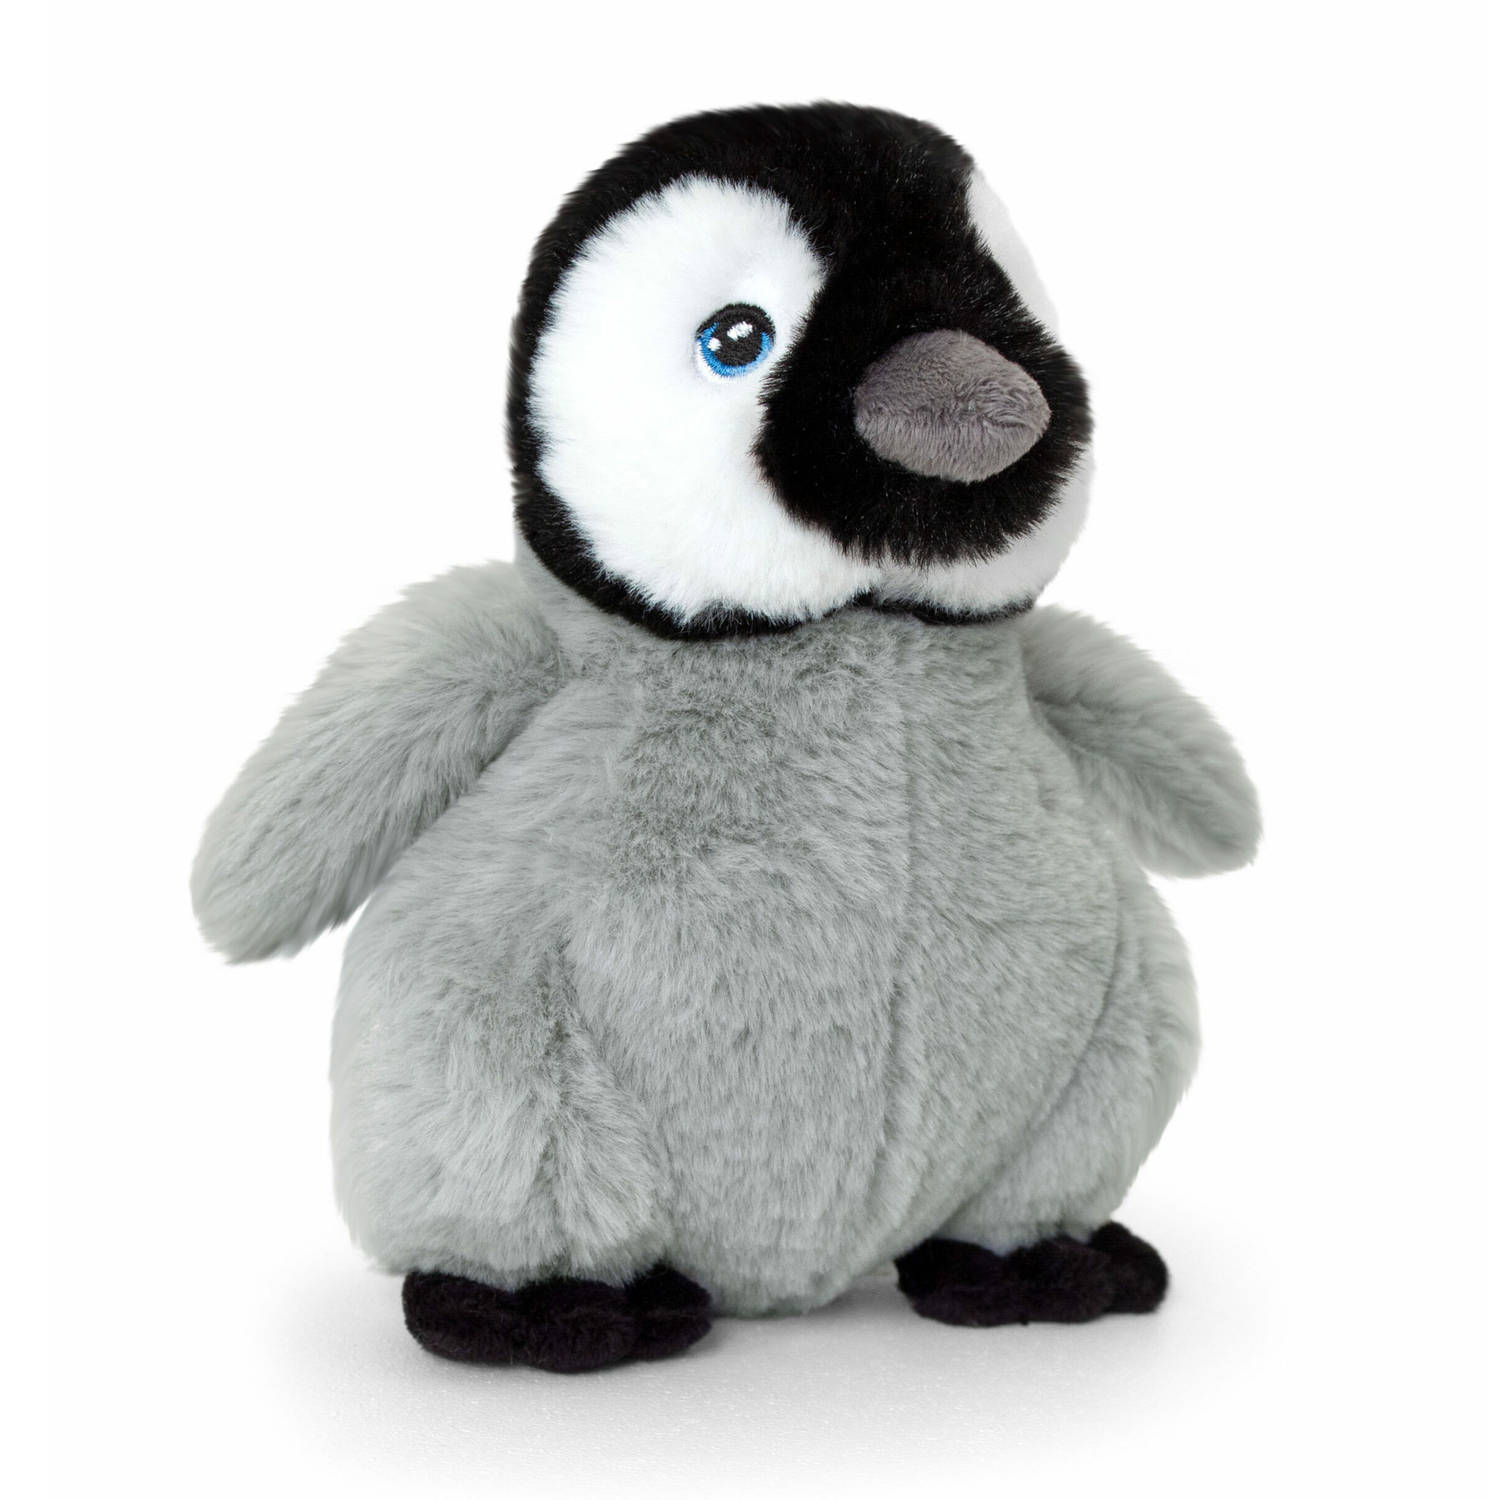 Keel Toys pluche keizers pinguin kuiken knuffeldier - grijs/zwart - staand - 25 cm - Pooldieren